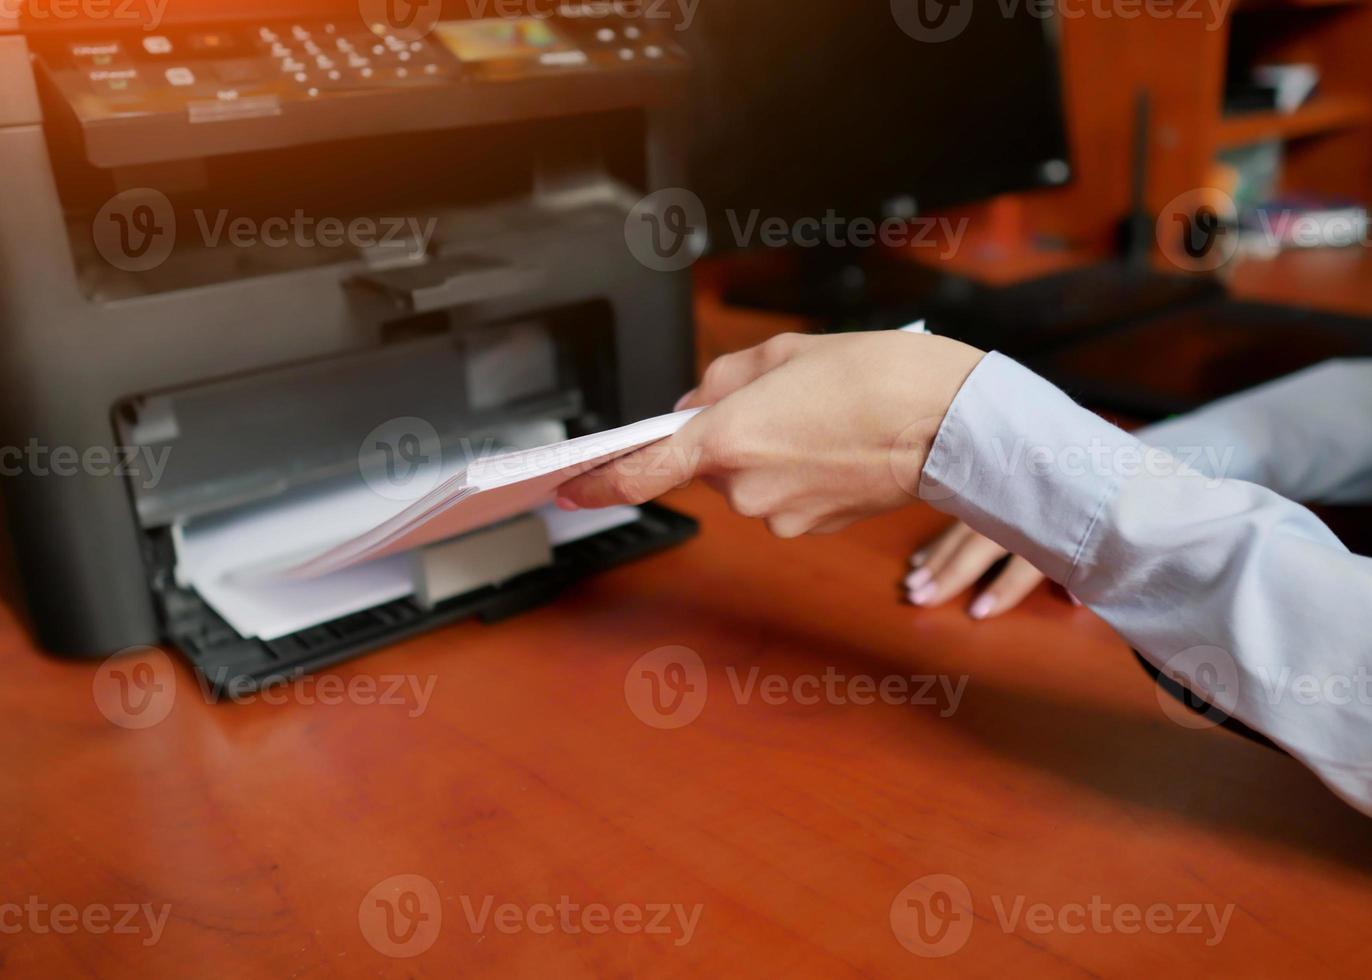 la mano humana está recargando el papel en la bandeja de la impresora foto